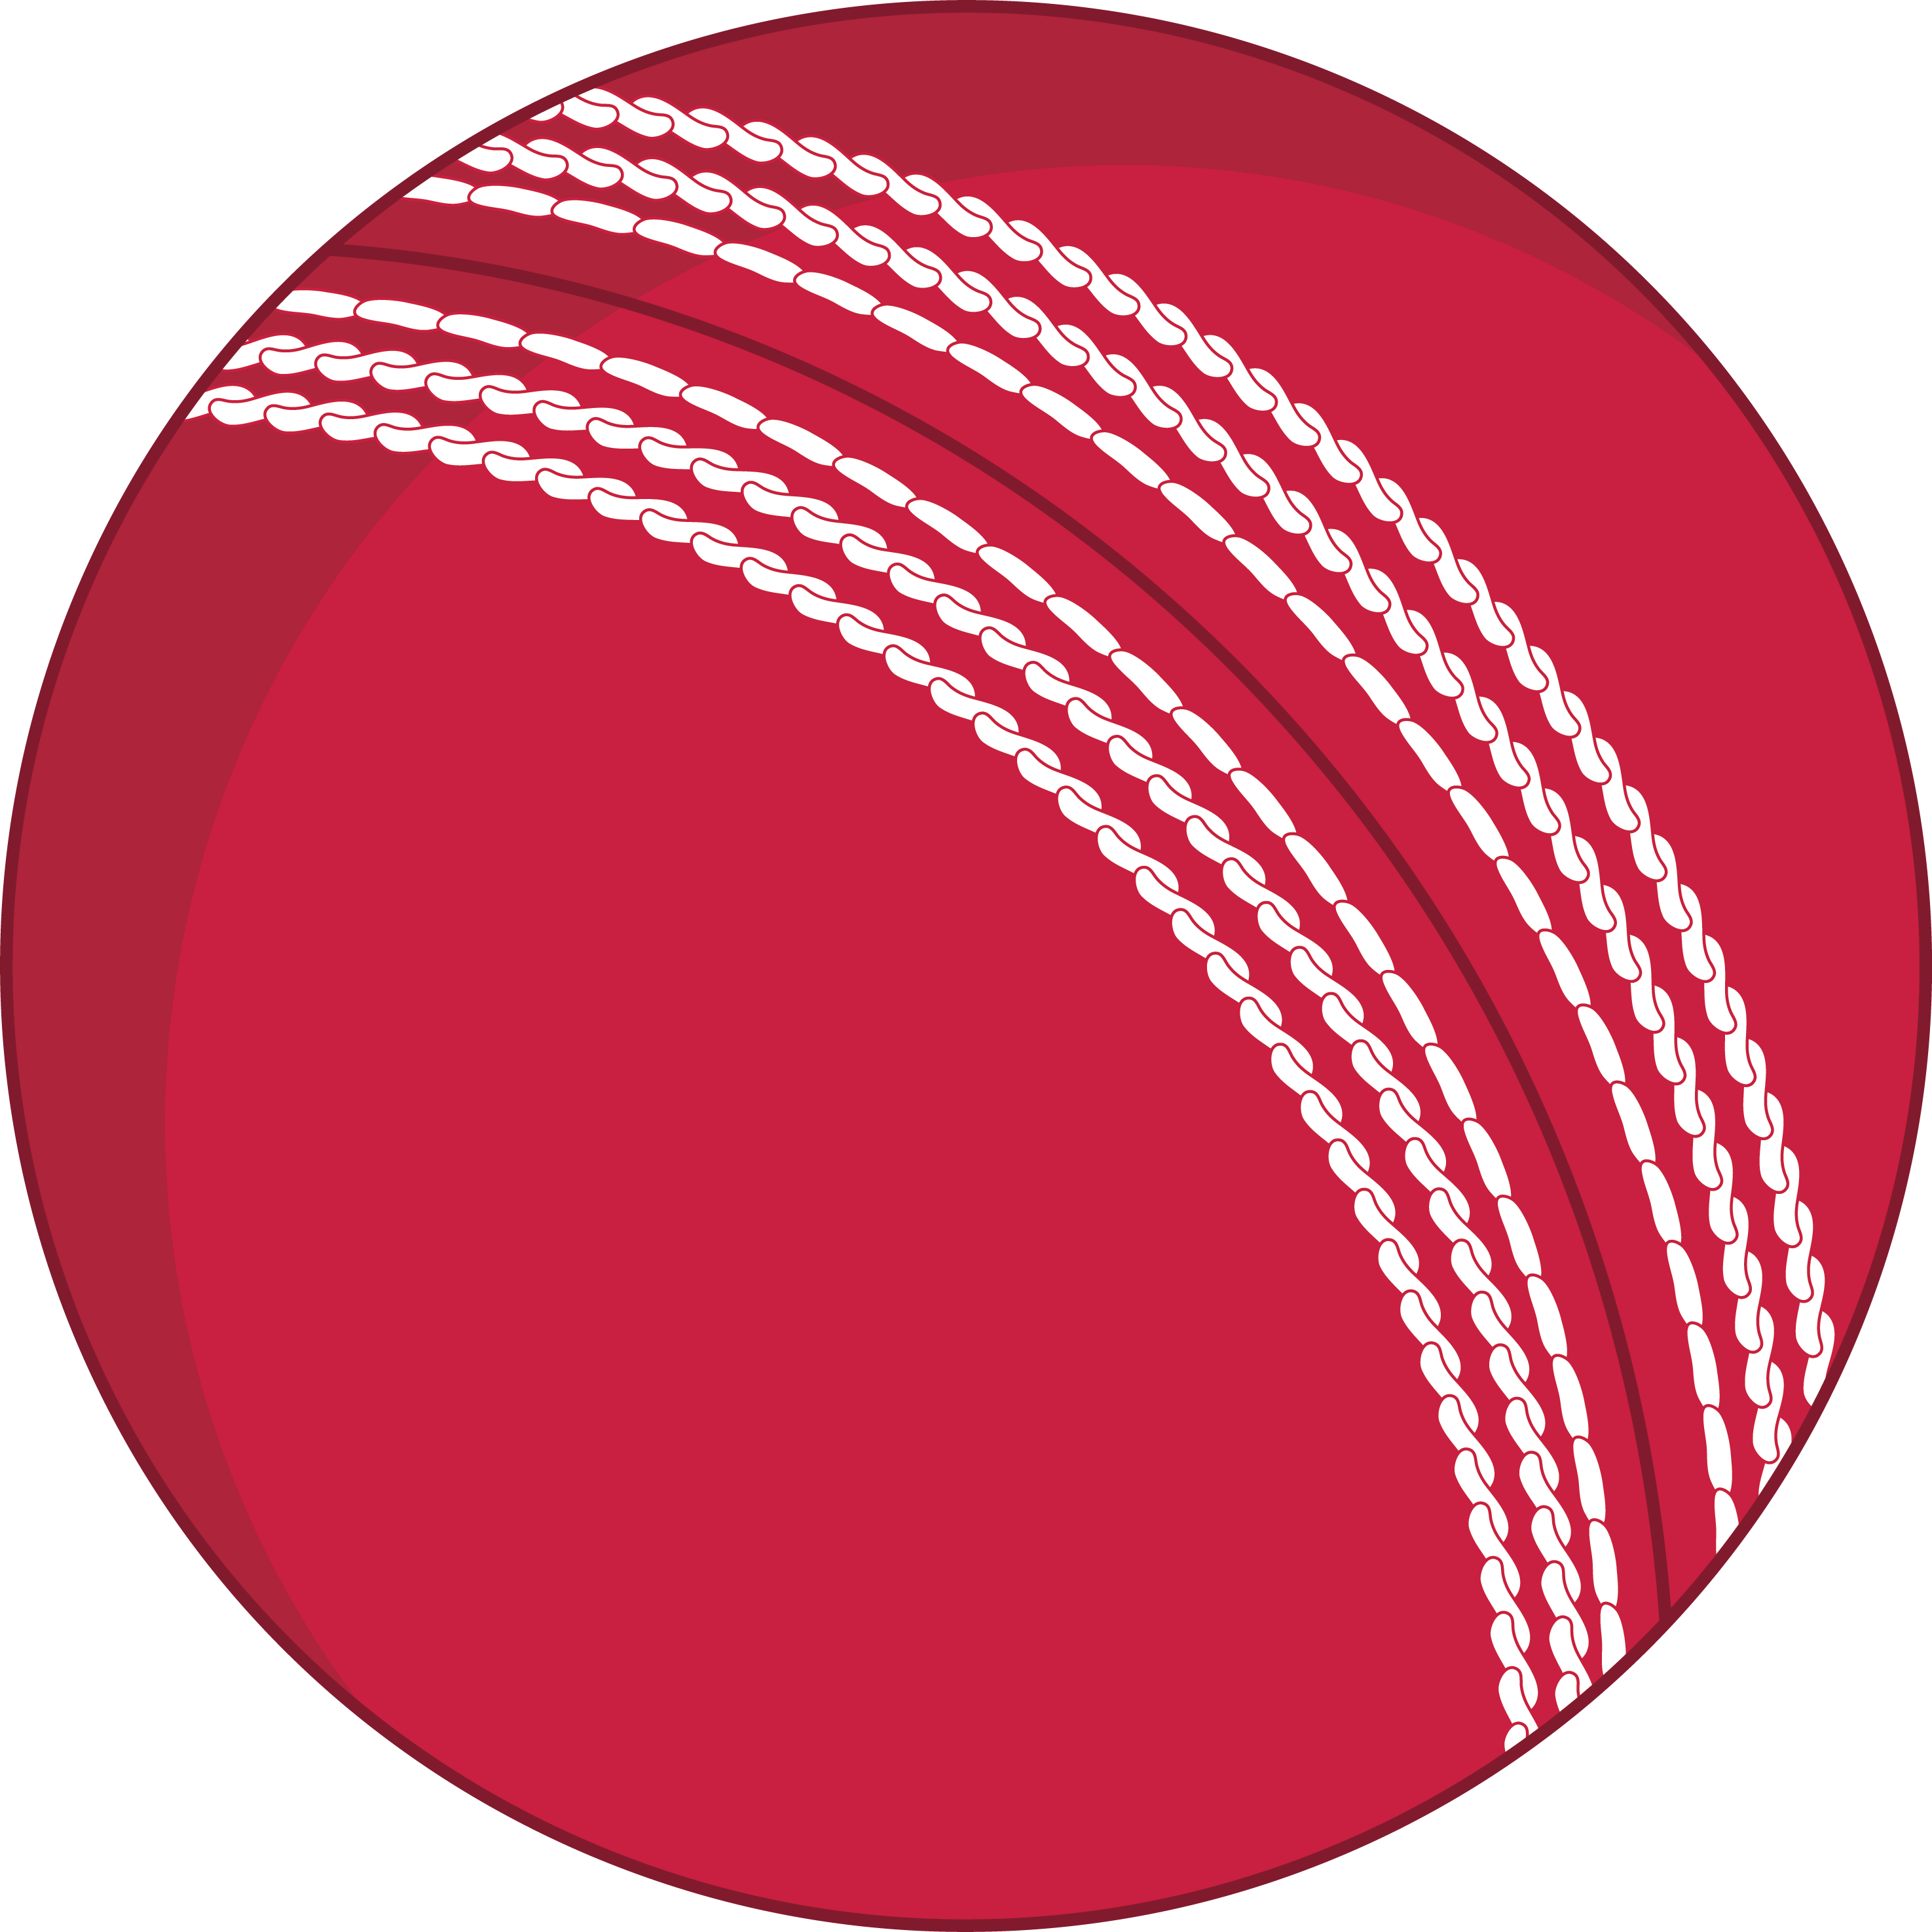 Cricket Ball Logo - Cricket ball logo png 4 » PNG Image